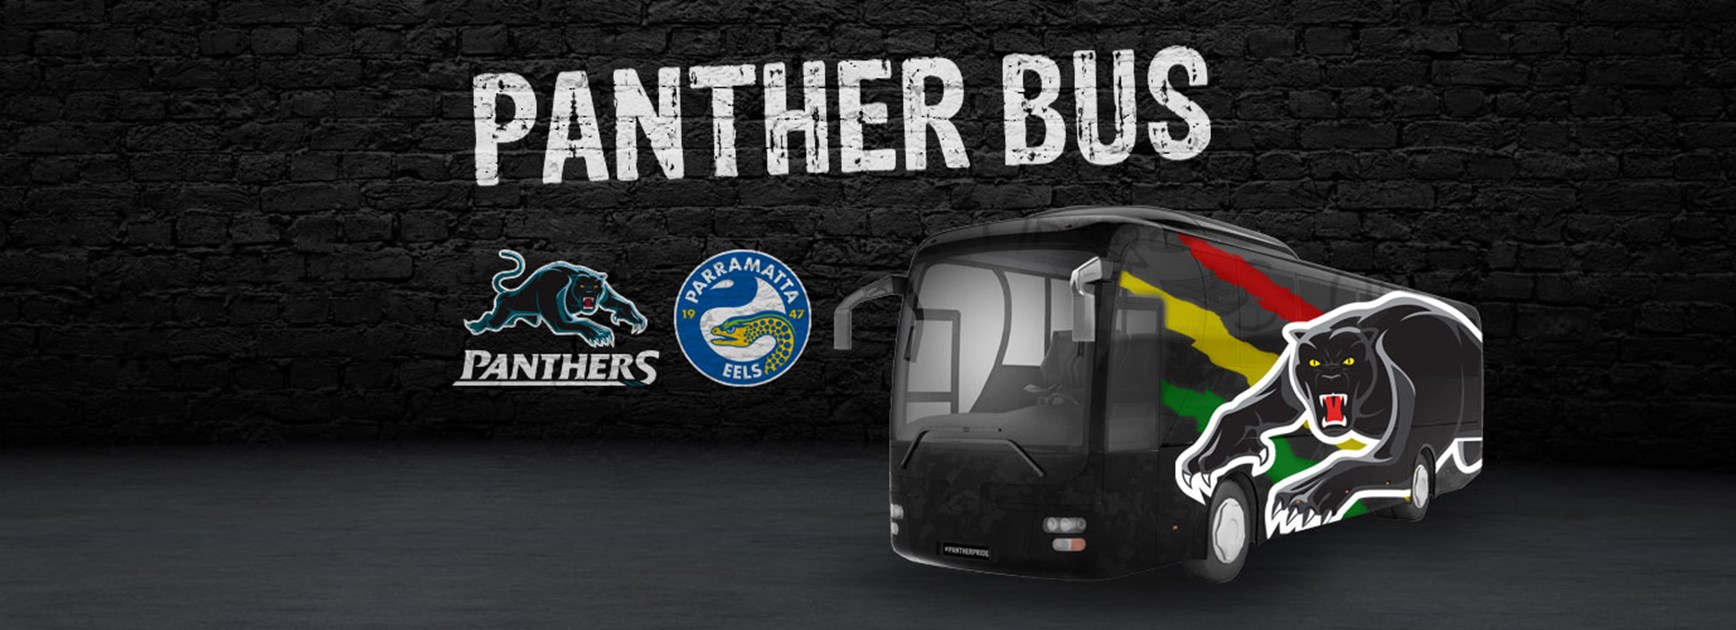 Panther Bus: Round 5